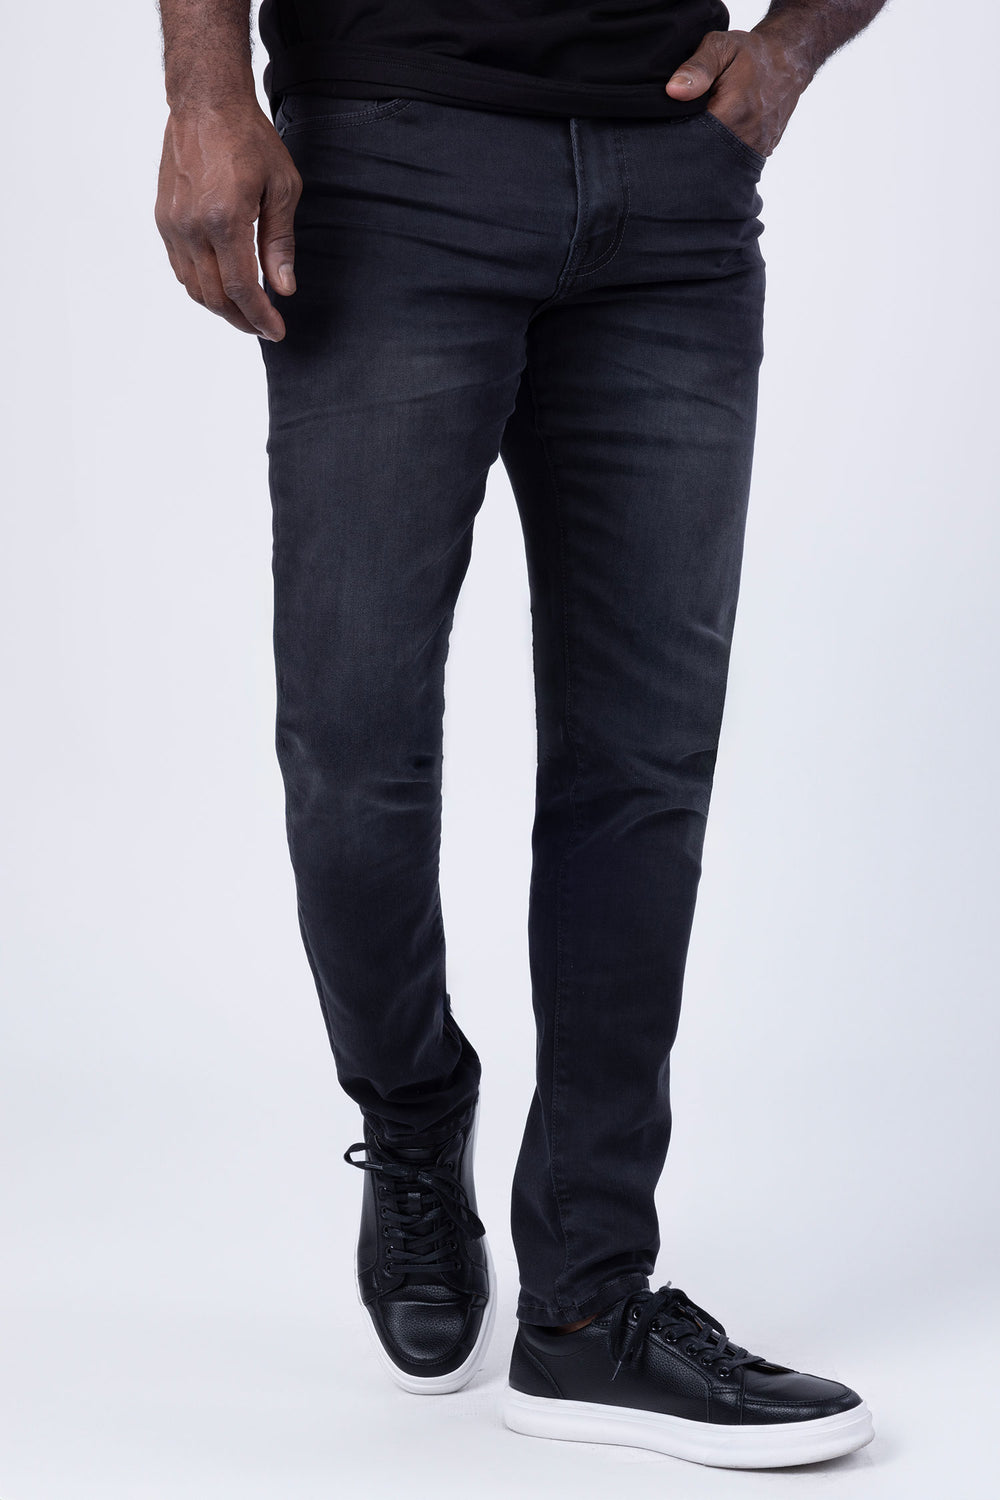 Barabas Men's Solid Color Mid-Rise Slim-Fit Denim Jeans 4JE13 Charcoal